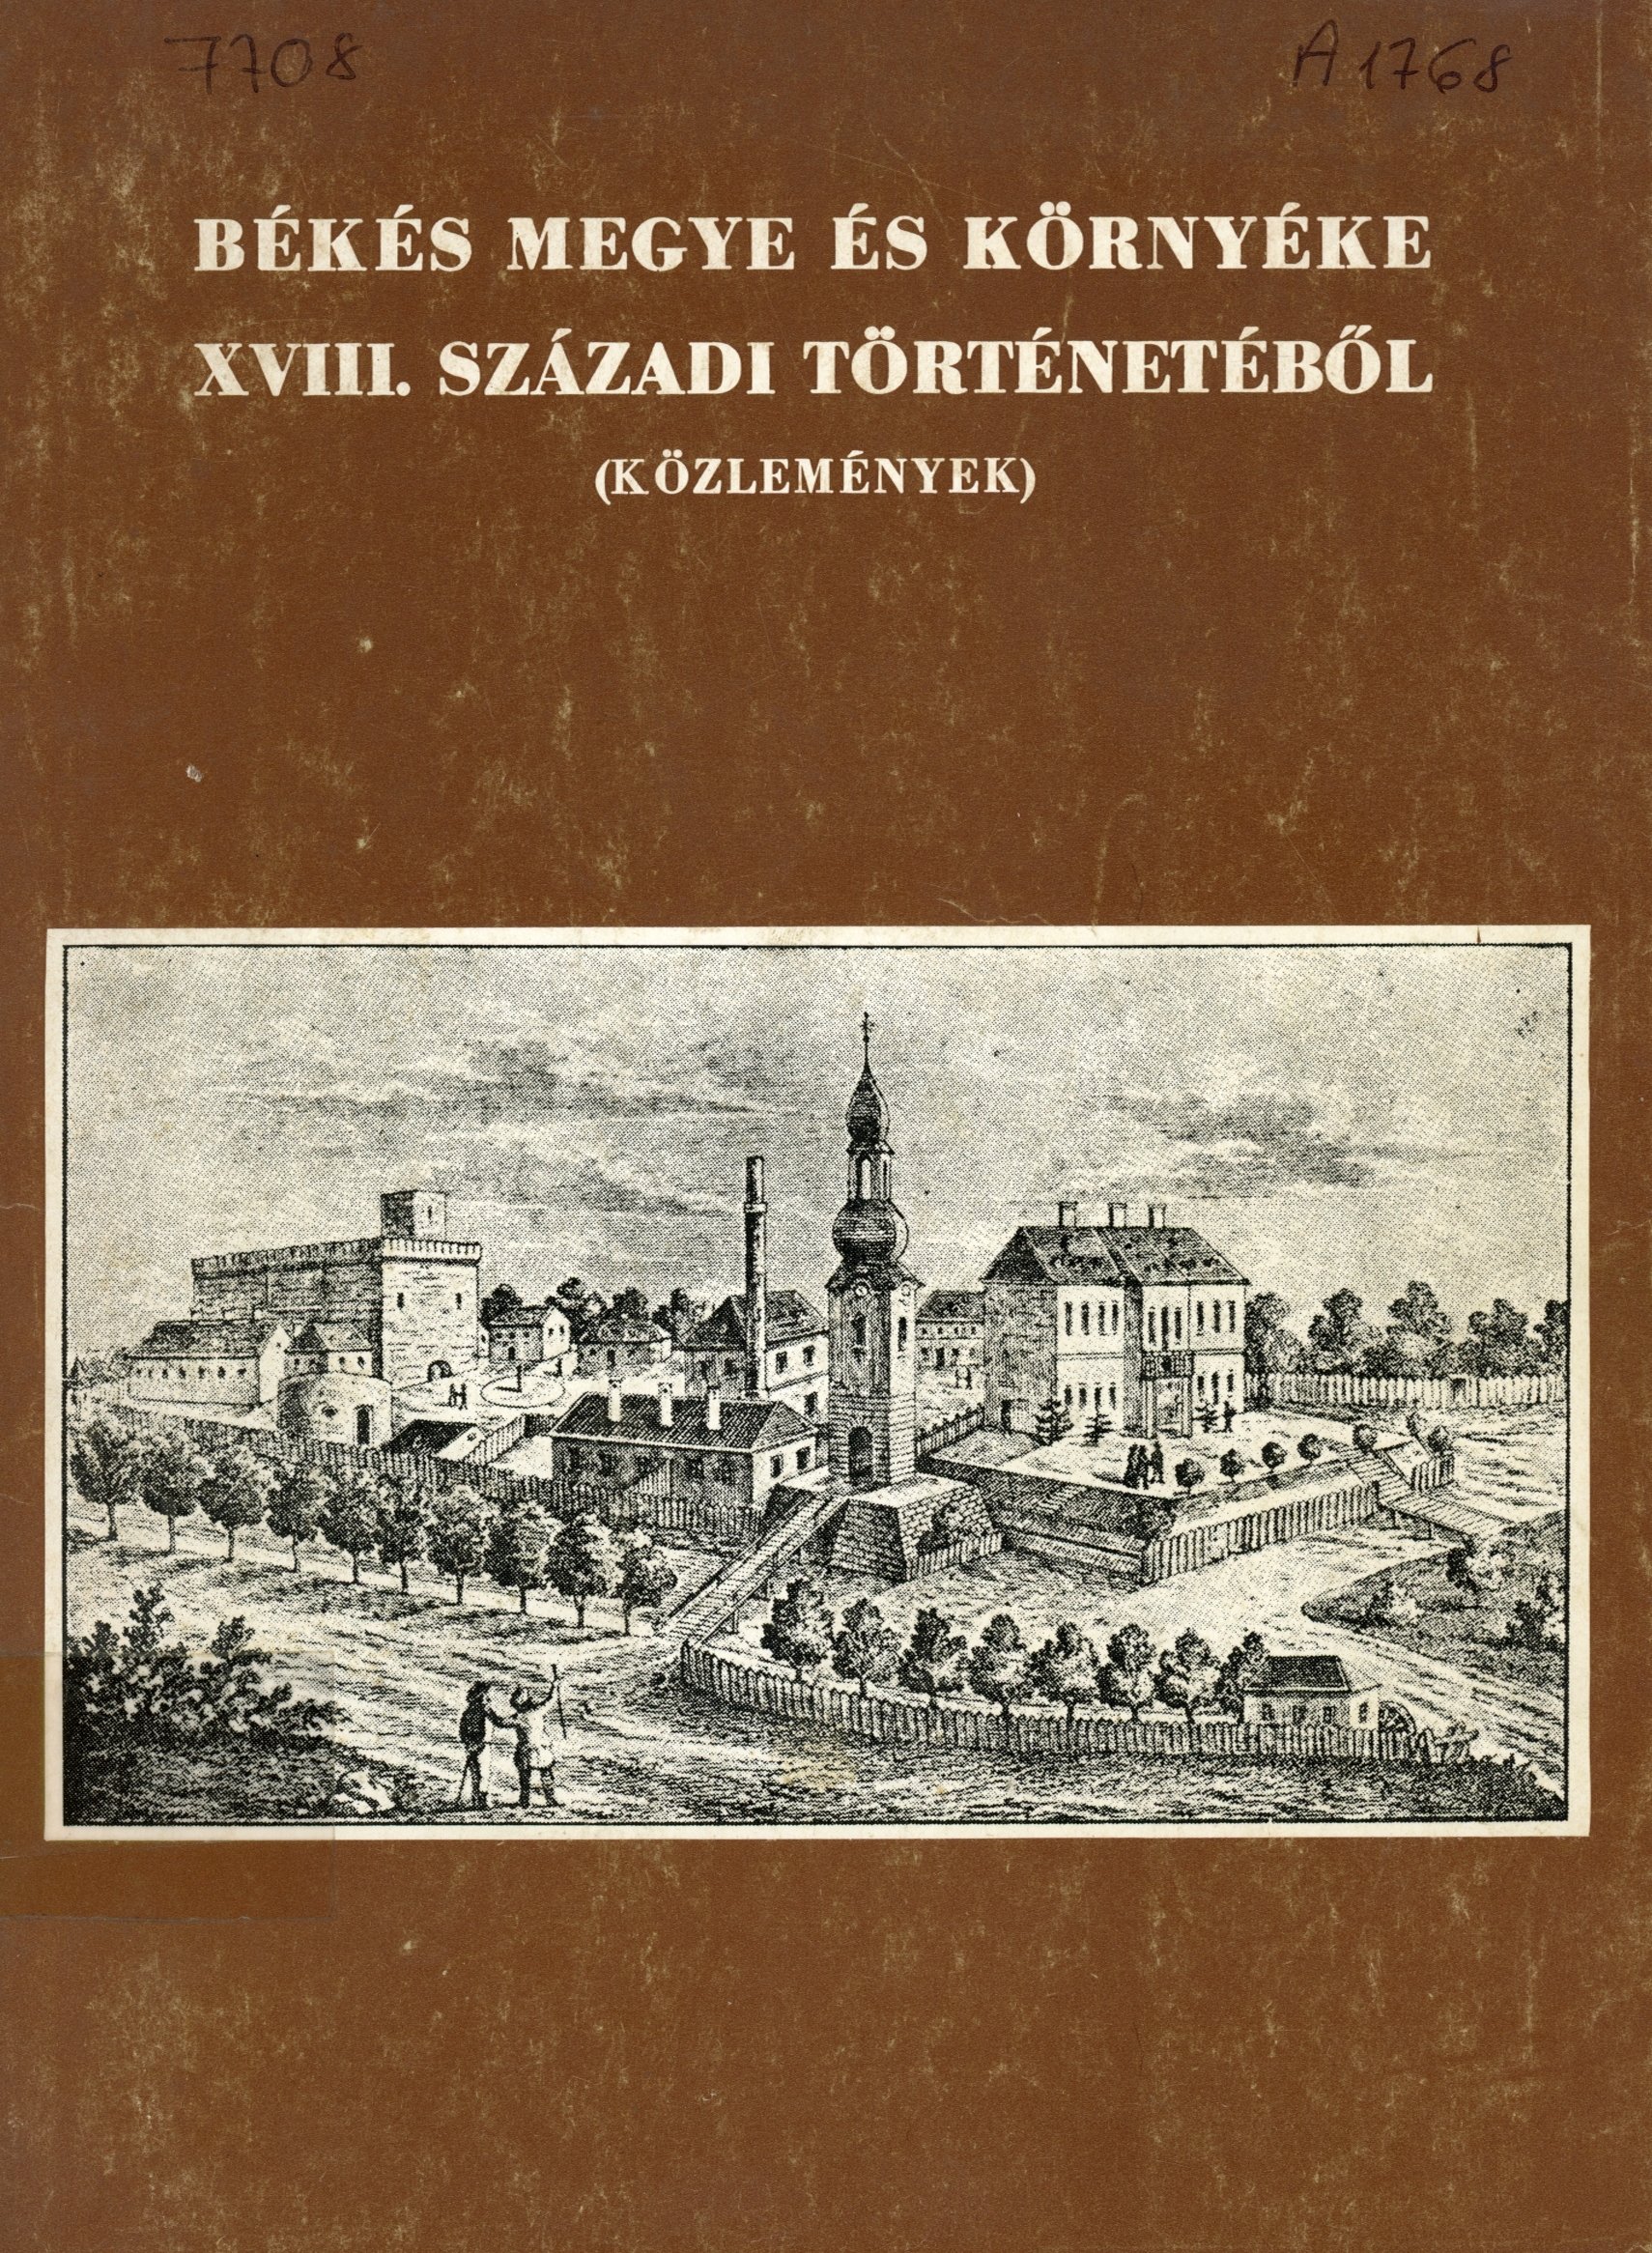 Békés Megye és környéke XVIII. századi történetéből (Erkel Ferenc Múzeum és Könyvtár, Gyula CC BY-NC-SA)